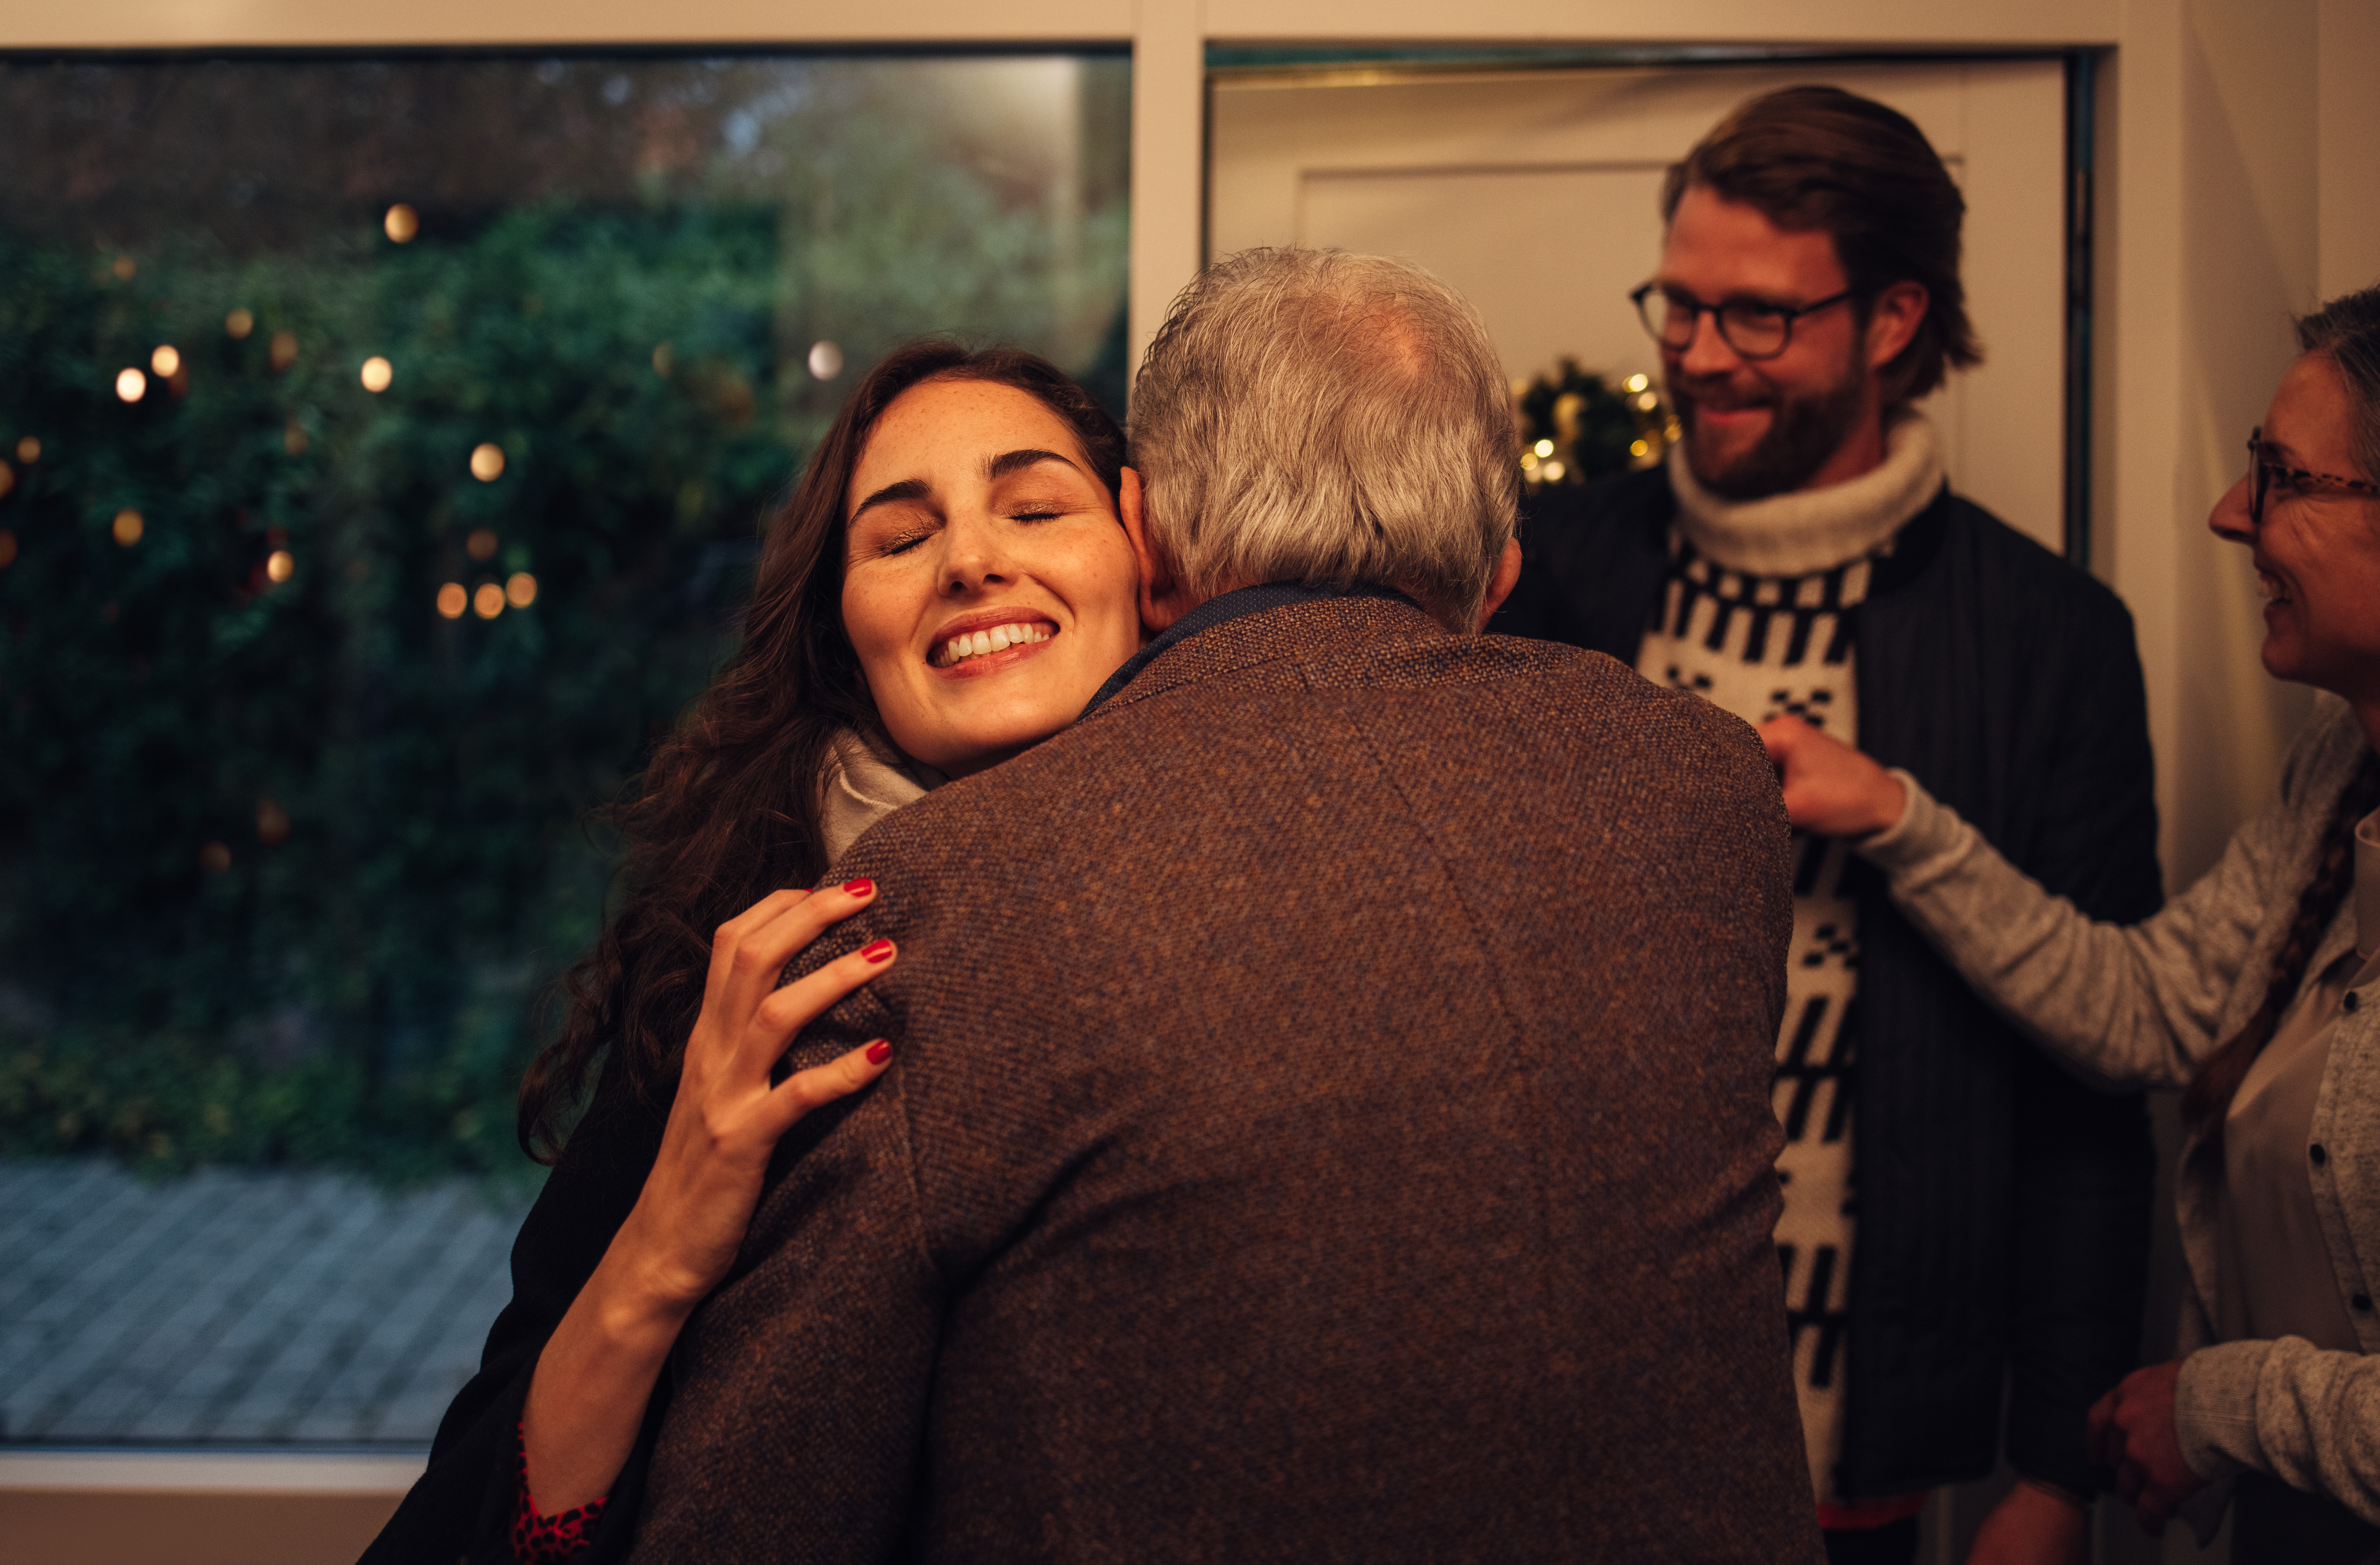 Frau, die ihre Eltern umarmt | Shutterstock